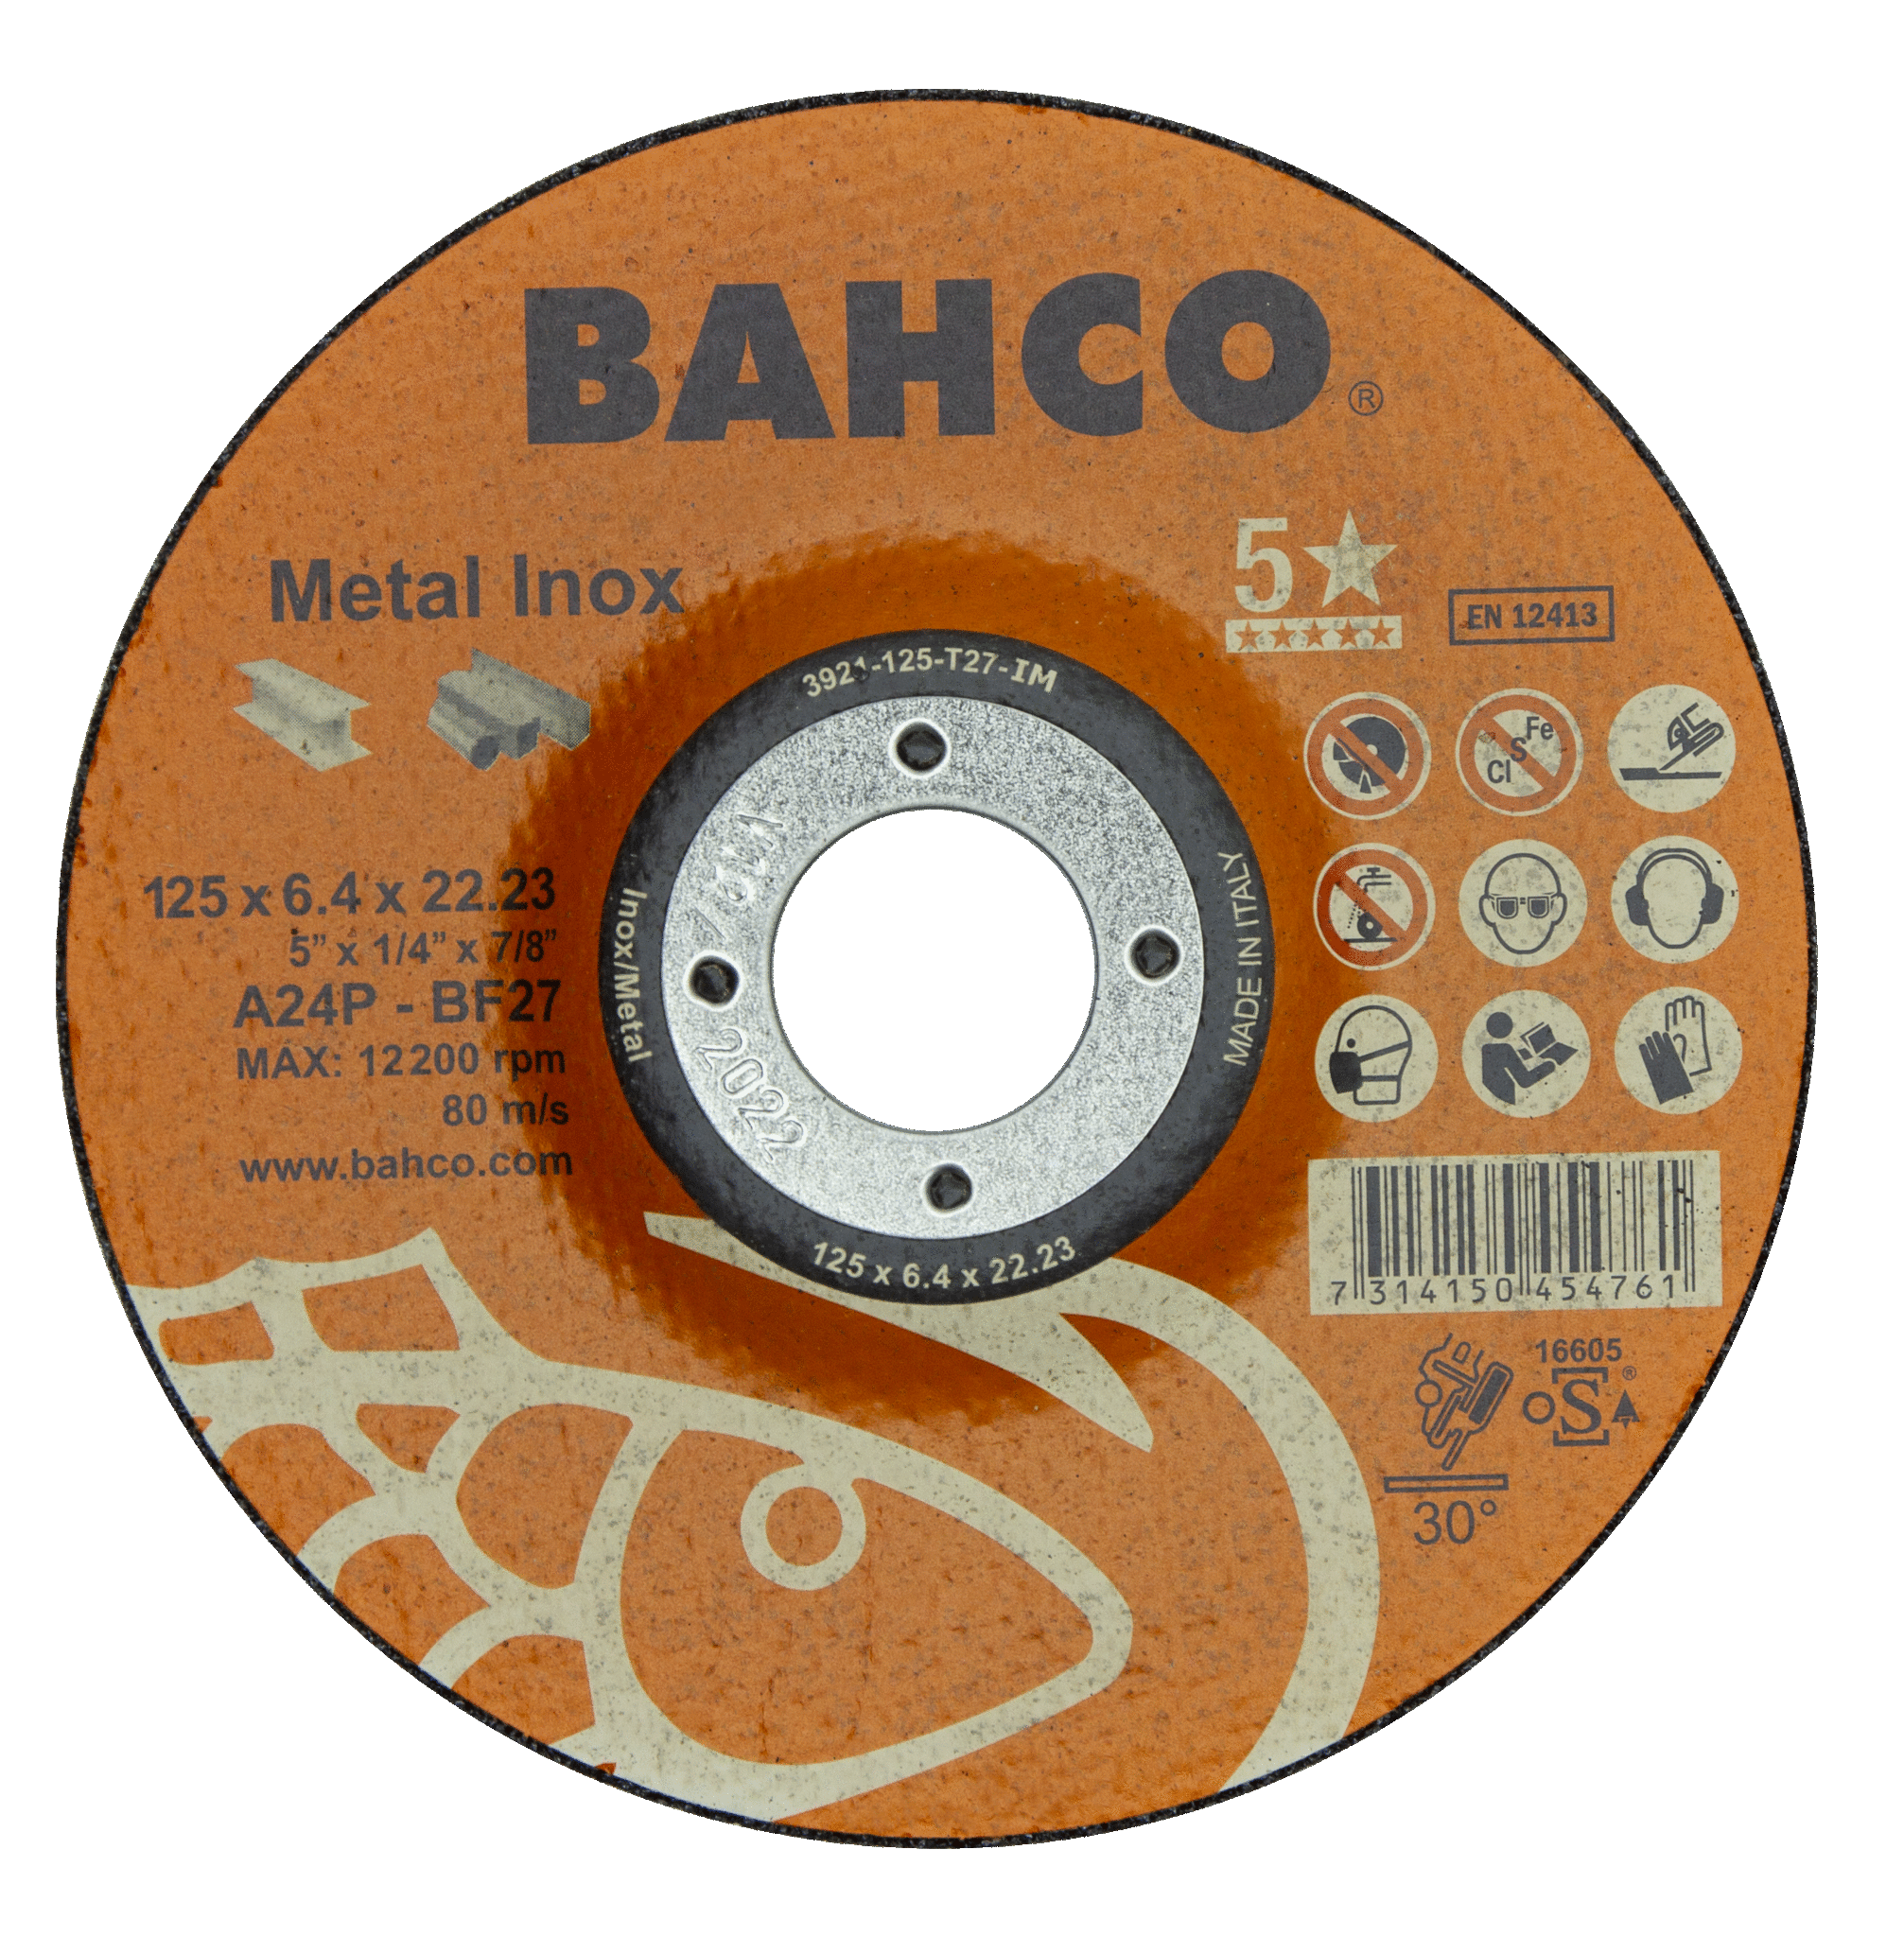 картинка Высокороизводительные диски для шлифования нержавеющей стали и металла 150 x 6.4 x 22.23mm BAHCO 3921-150-T27-IM от магазина "Элит-инструмент"